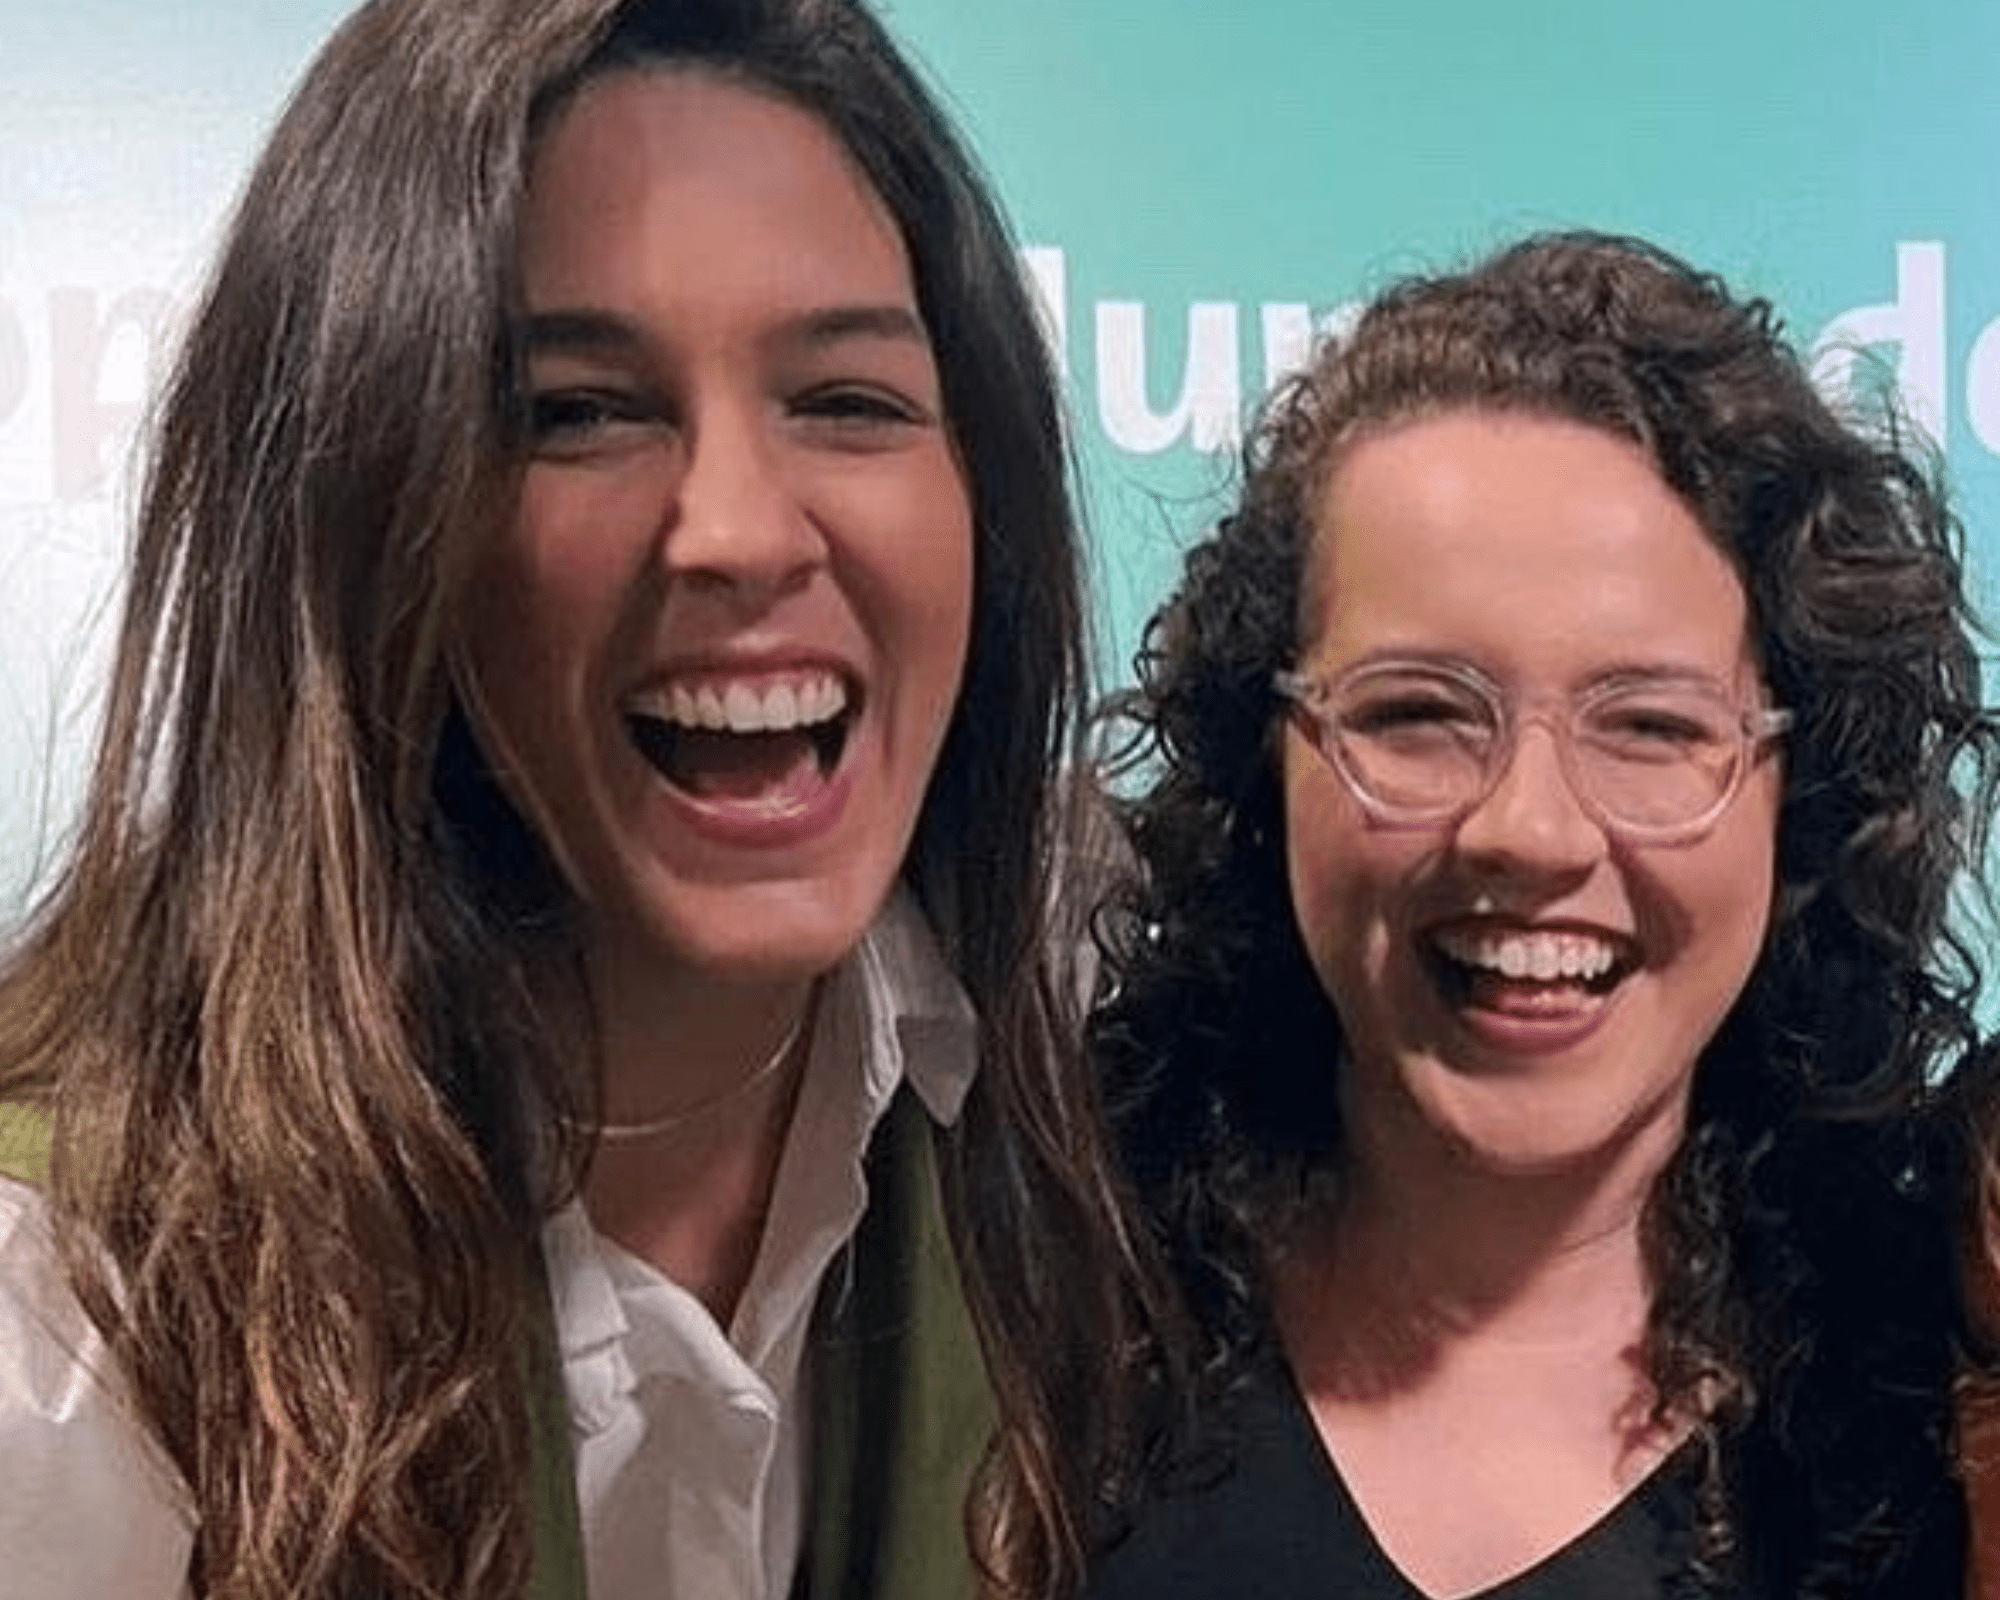 Renata Silveira se torna primeira mulher a narrar um jogo de Copa